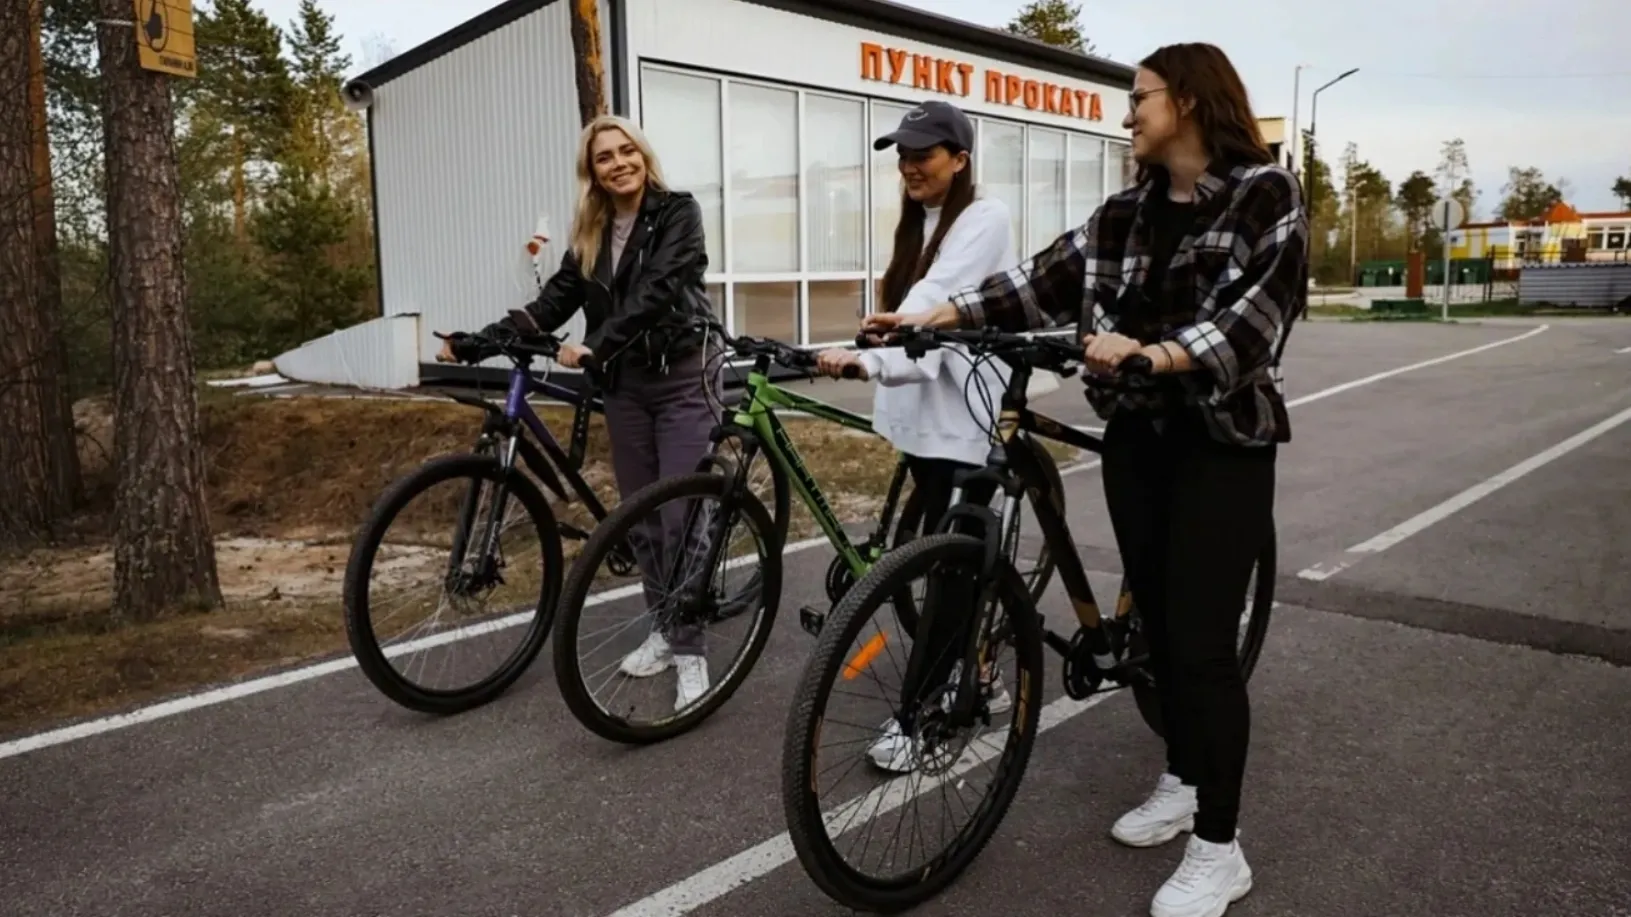 Среди лучших губкинских проектов — пятикилометровая велодорожка. Фото предоставлено пресс-службой губернатора ЯНАО